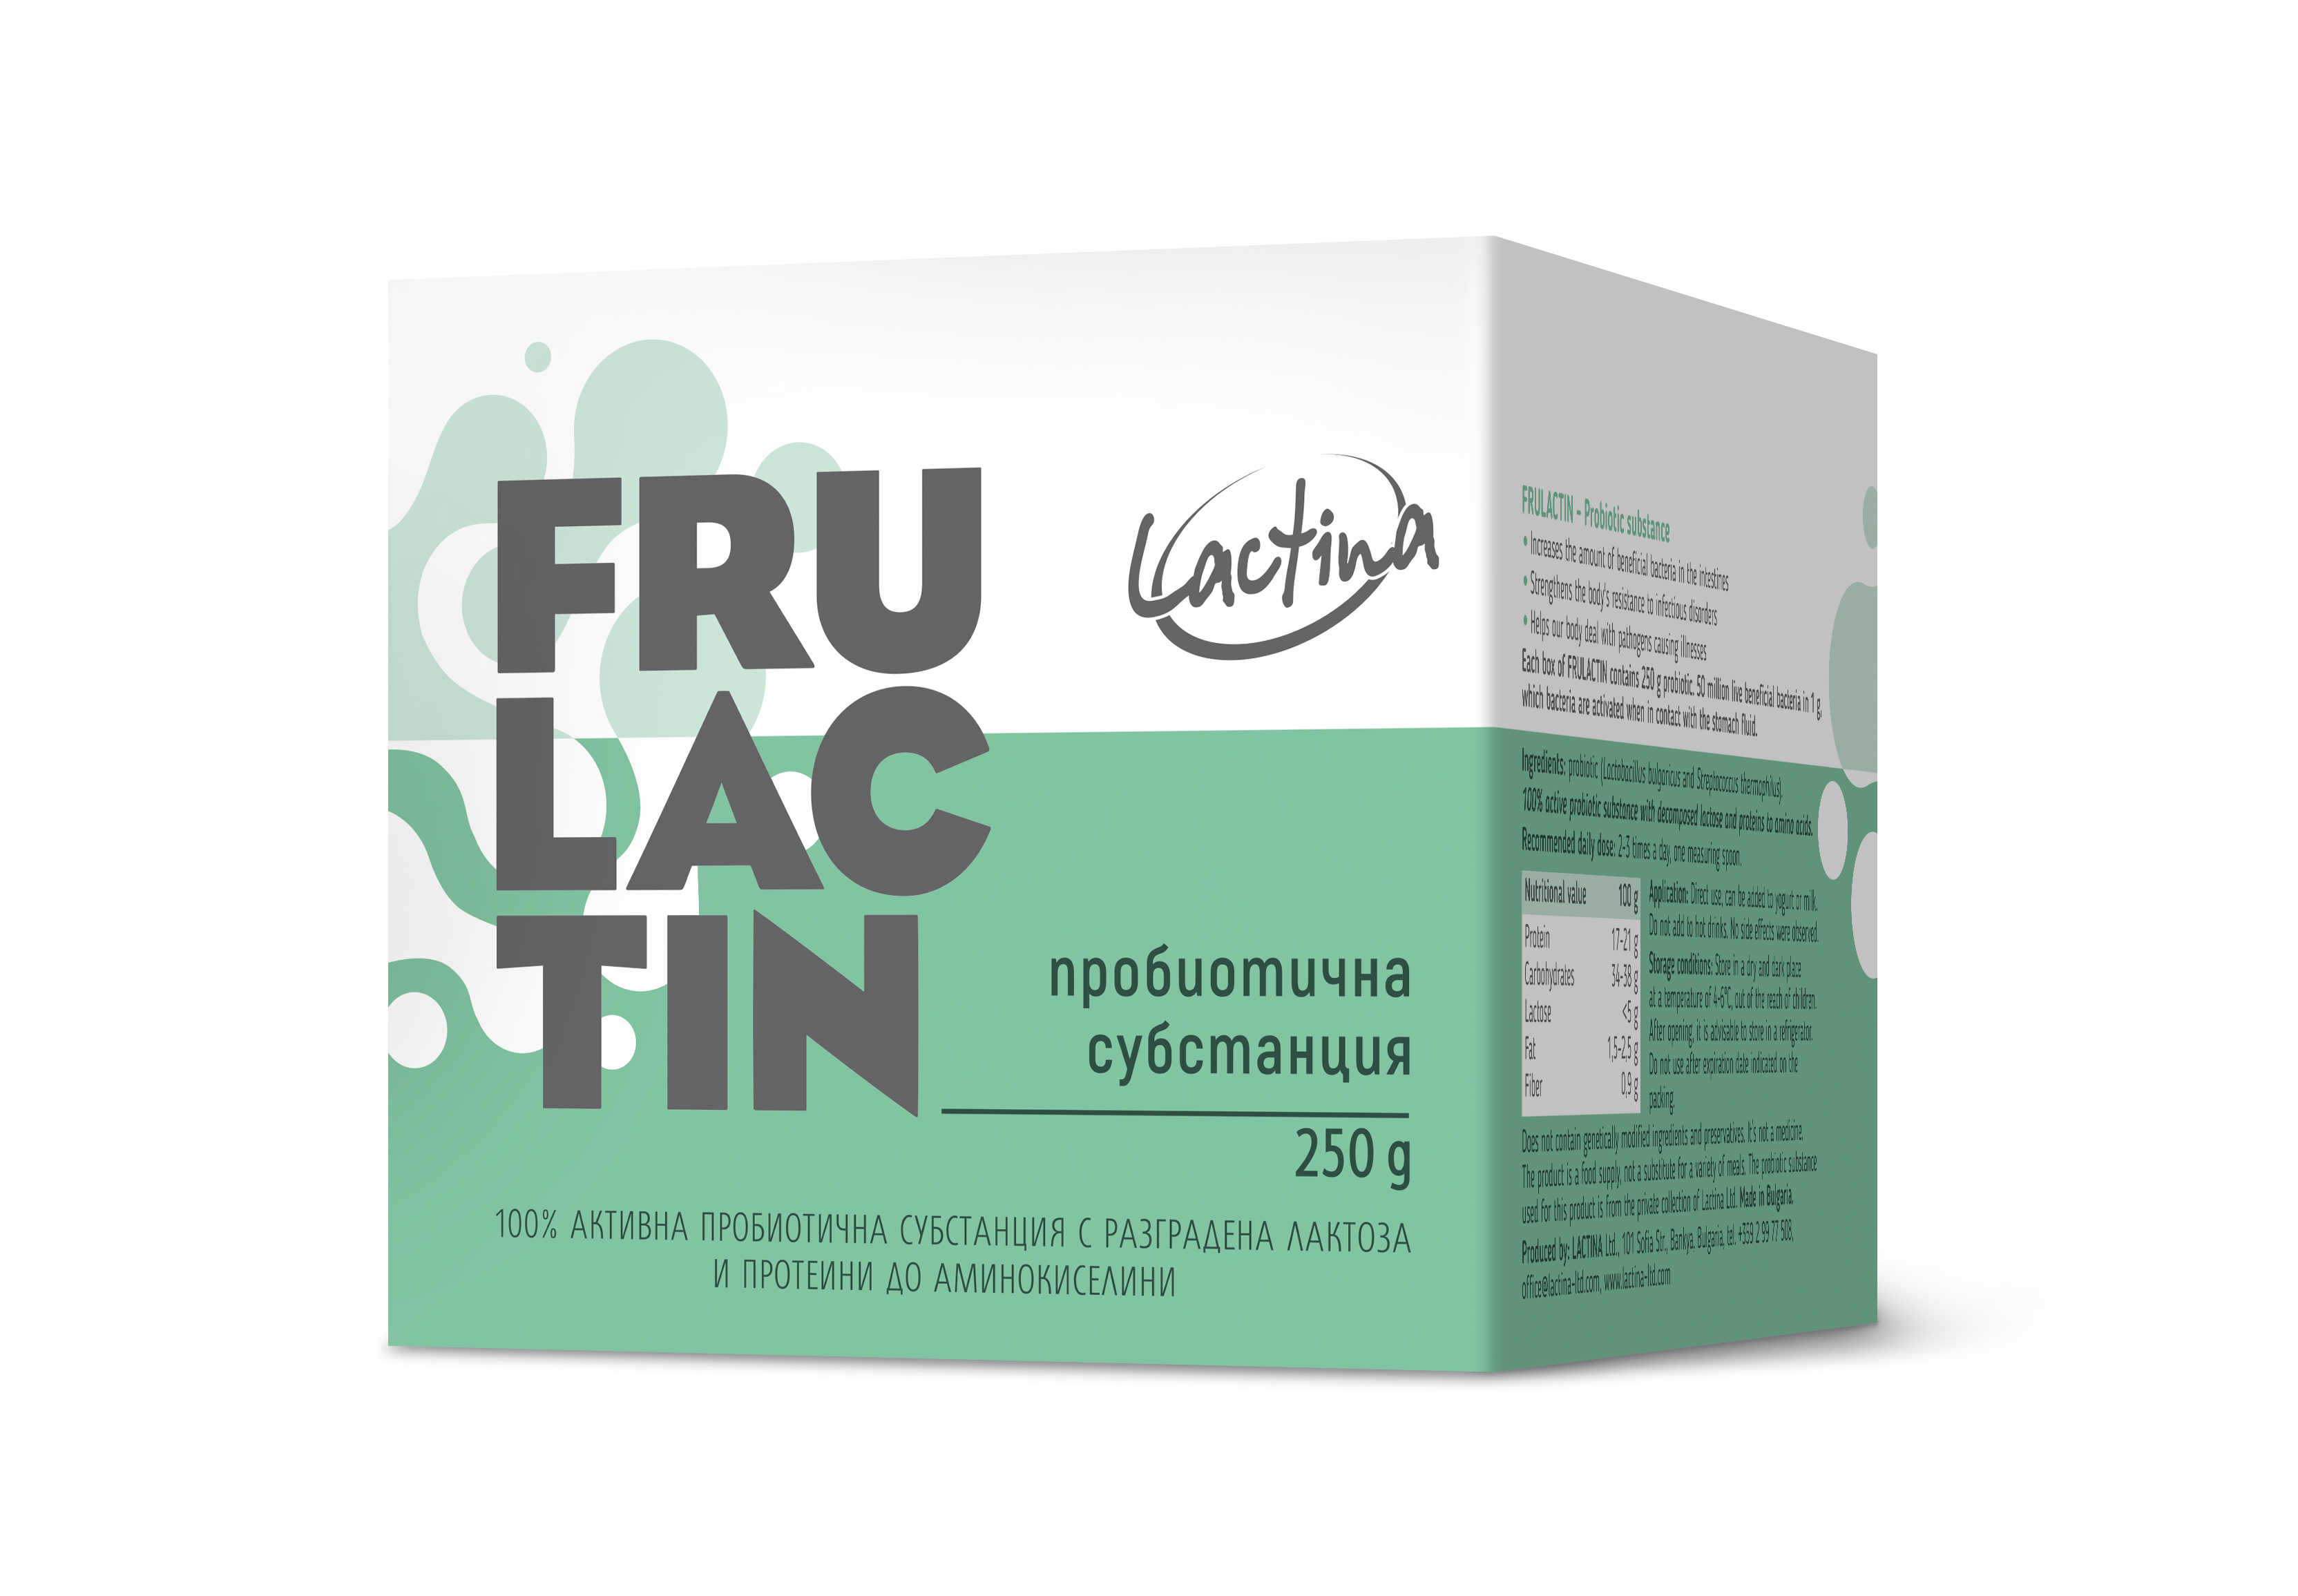 Пробиотична субстанция Фрулактин ▸ Лактина